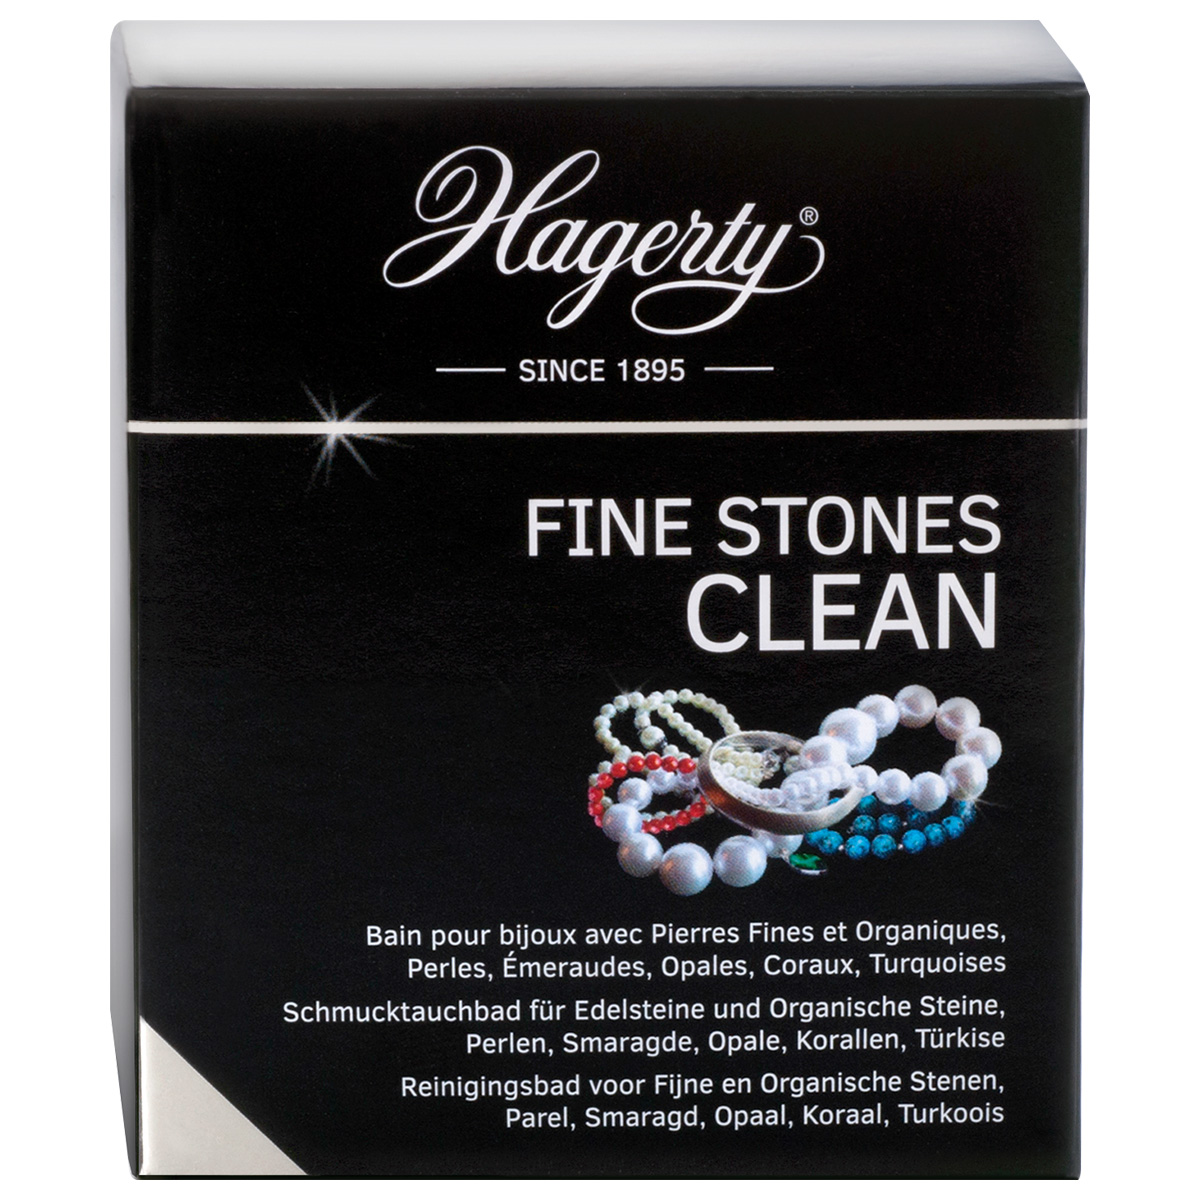 Hagerty Fine Stones Clean, juwelenverzorgingsproduct voor edelstenen, 170 ml